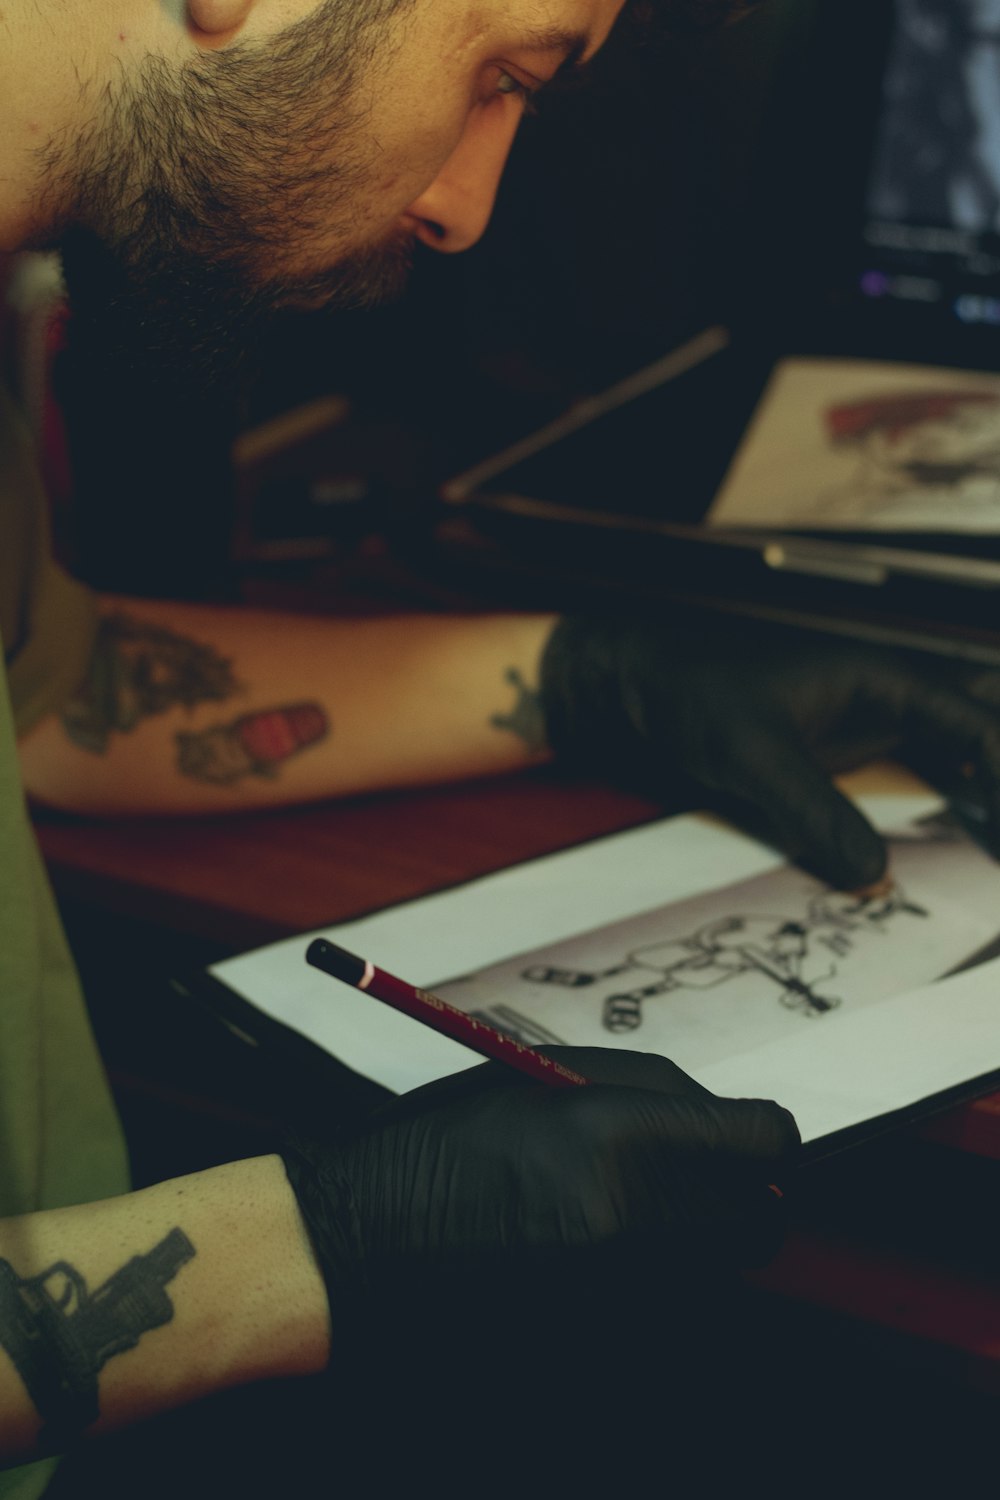 Ein Mann mit einem Tattoo auf dem Arm betrachtet eine Zeichnung